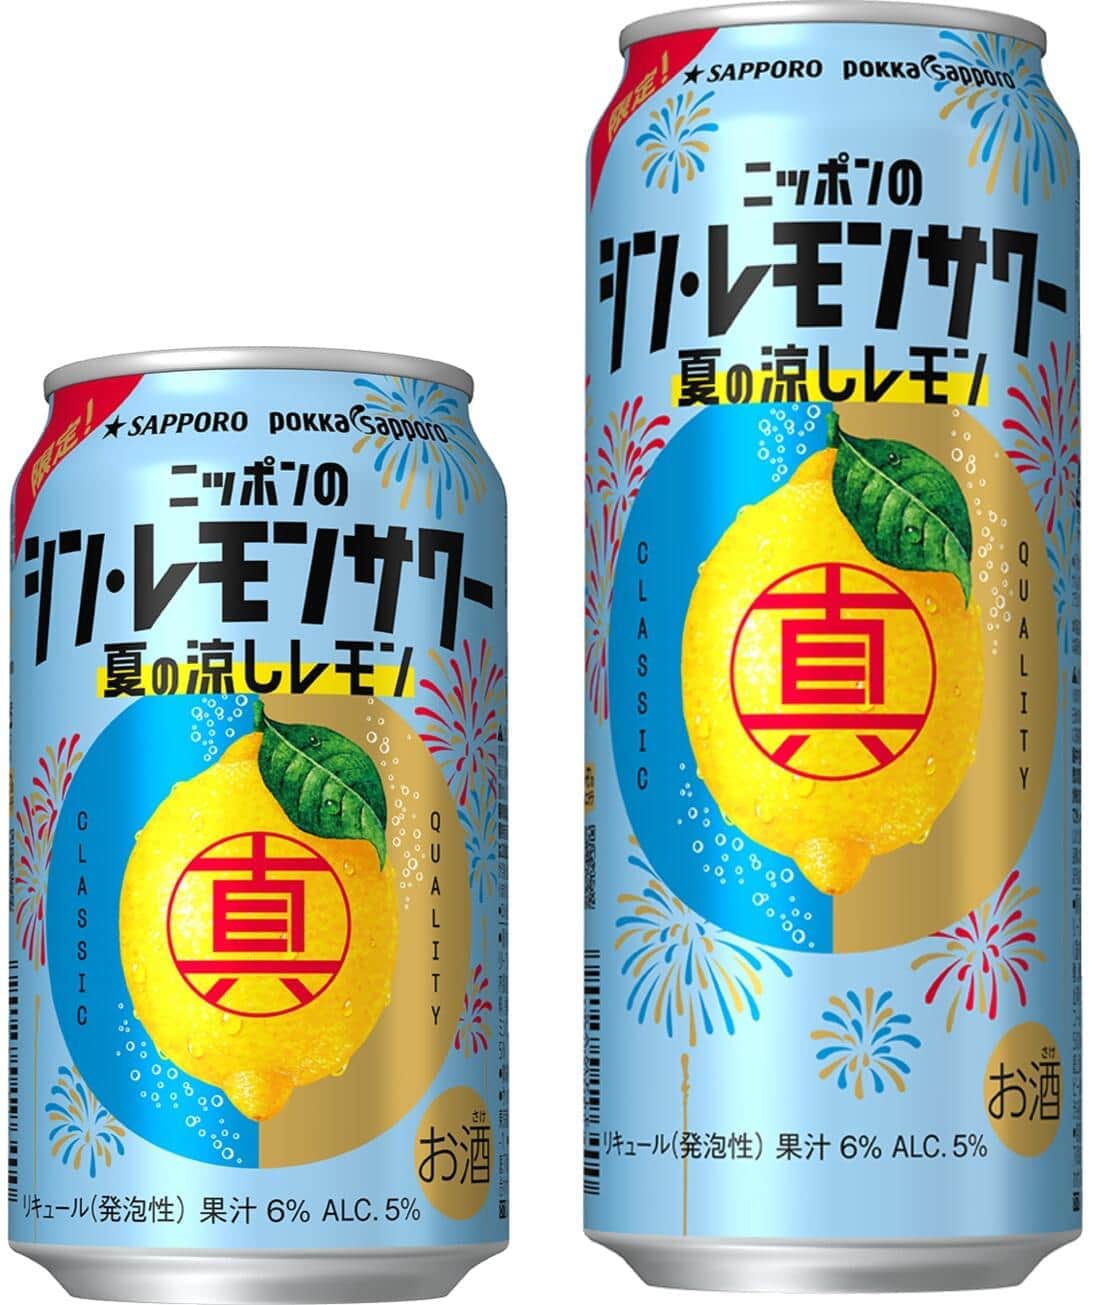 「サッポロ ニッポンのシン・レモンサワー 夏の涼しレモン」発売　数量限定、レモンのリーフエキス使用